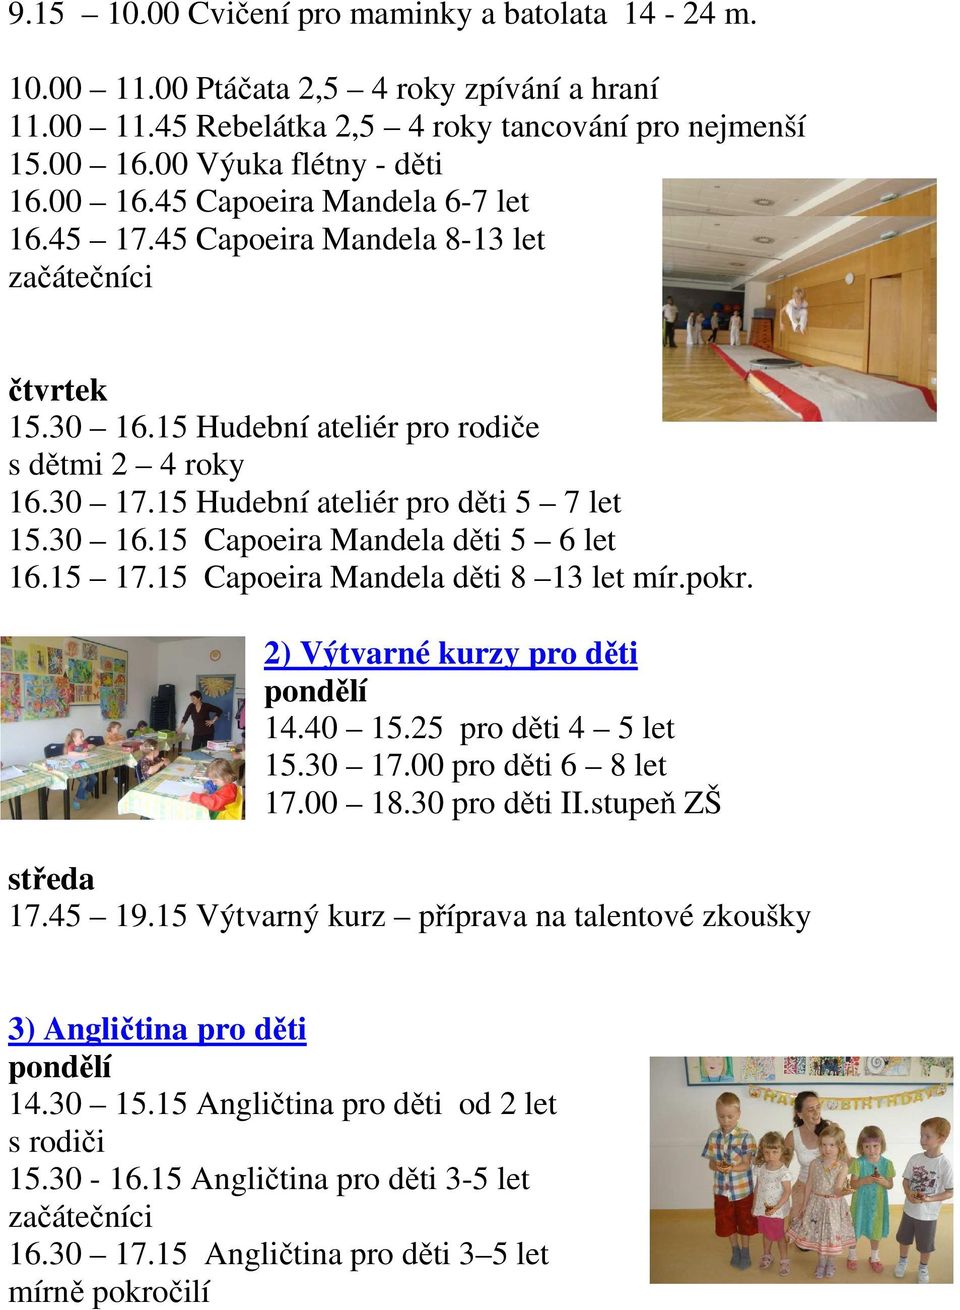 15 17.15 Capoeira Mandela děti 8 13 let mír.pokr. 2) Výtvarné kurzy pro děti 14.40 15.25 pro děti 4 5 let 15.30 17.00 pro děti 6 8 let 17.00 18.30 pro děti II.stupeň ZŠ středa 17.45 19.